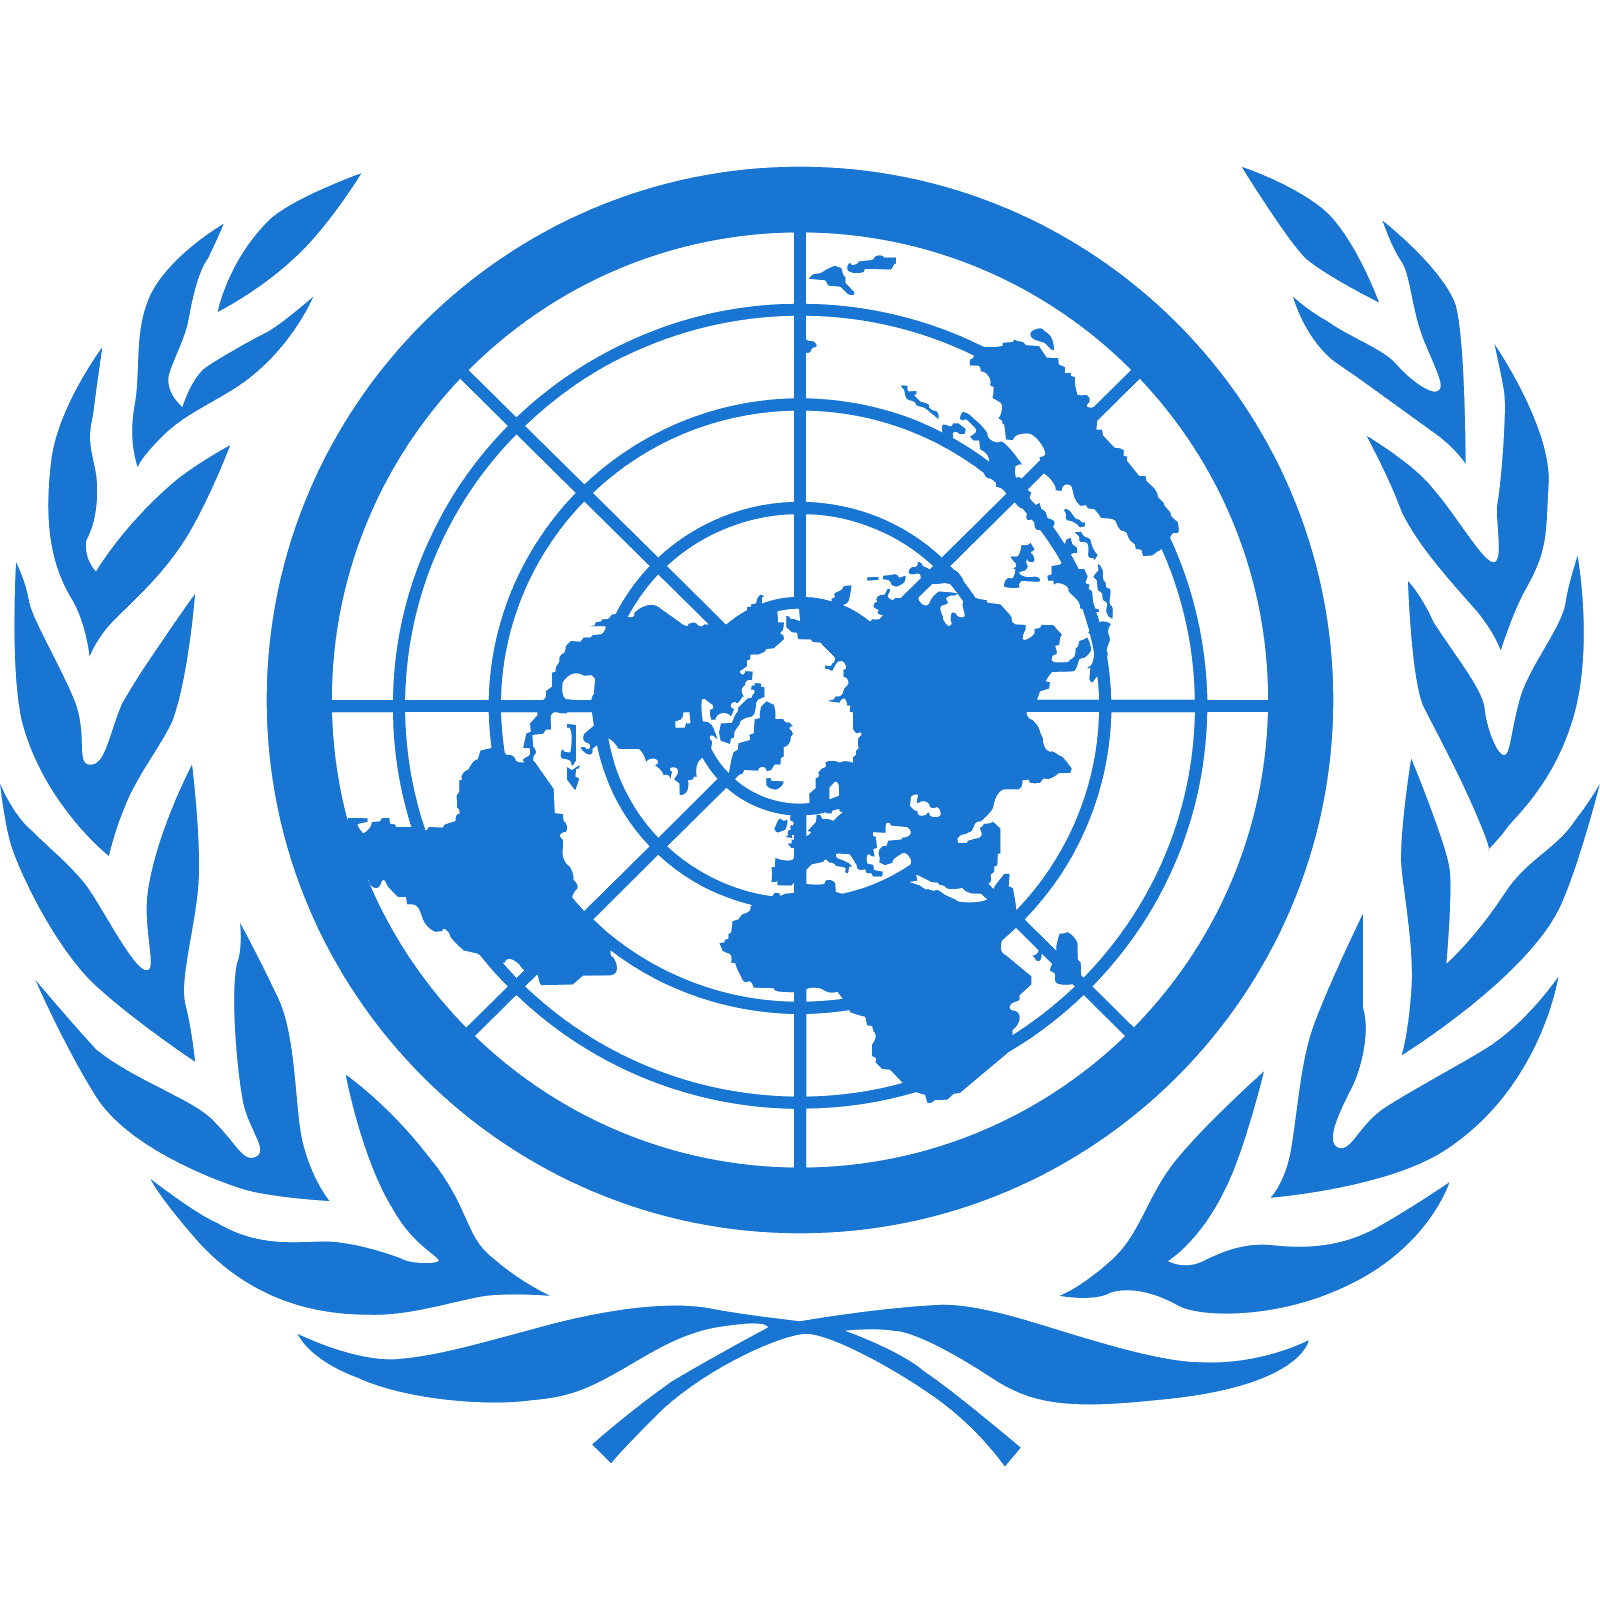 Het Transparante Beeld van de Verenigde Naties embleem